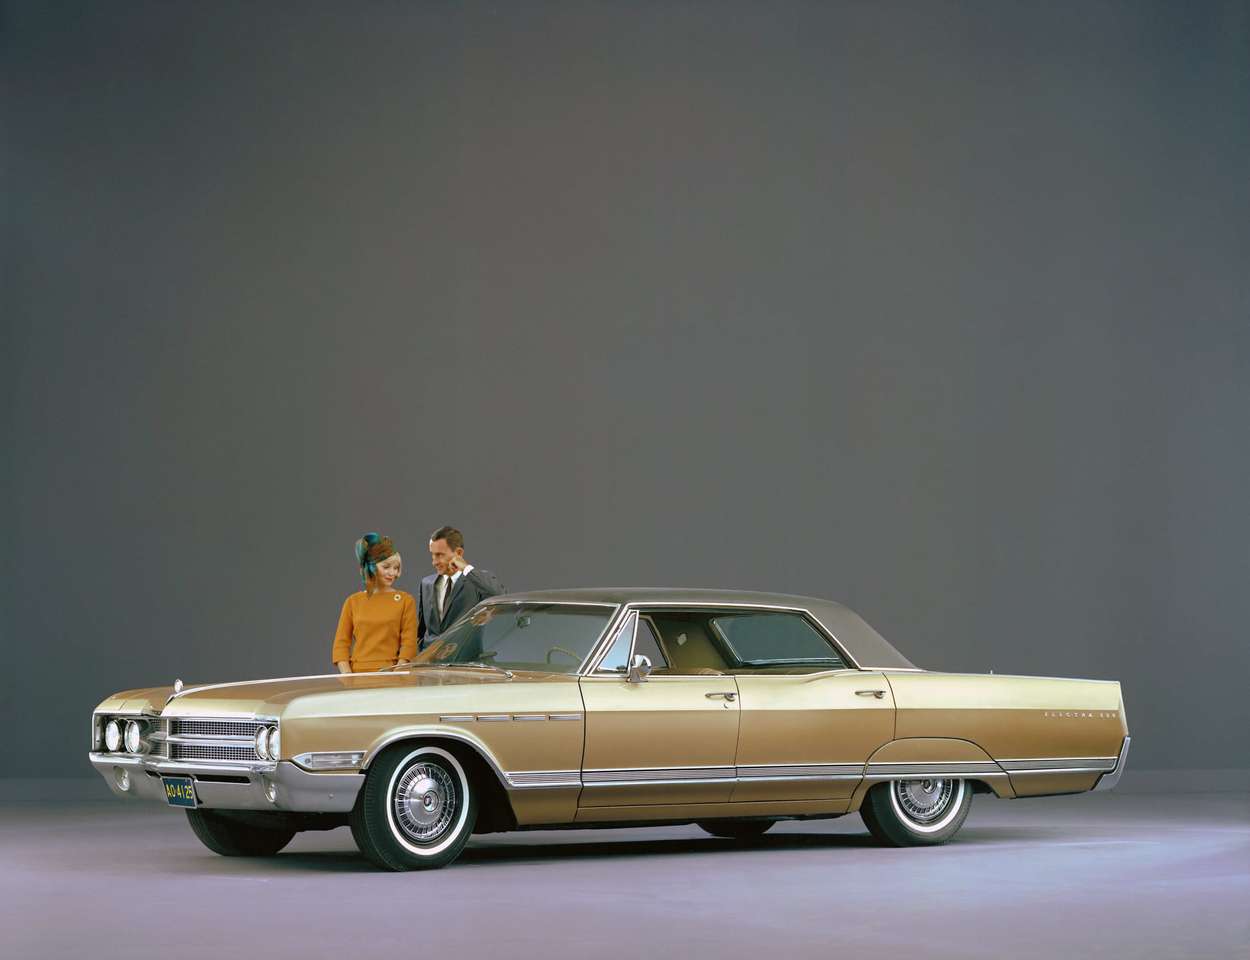 Buick Electra 225 1965 года выпуска, четырехдверная жесткая крыша пазл онлайн